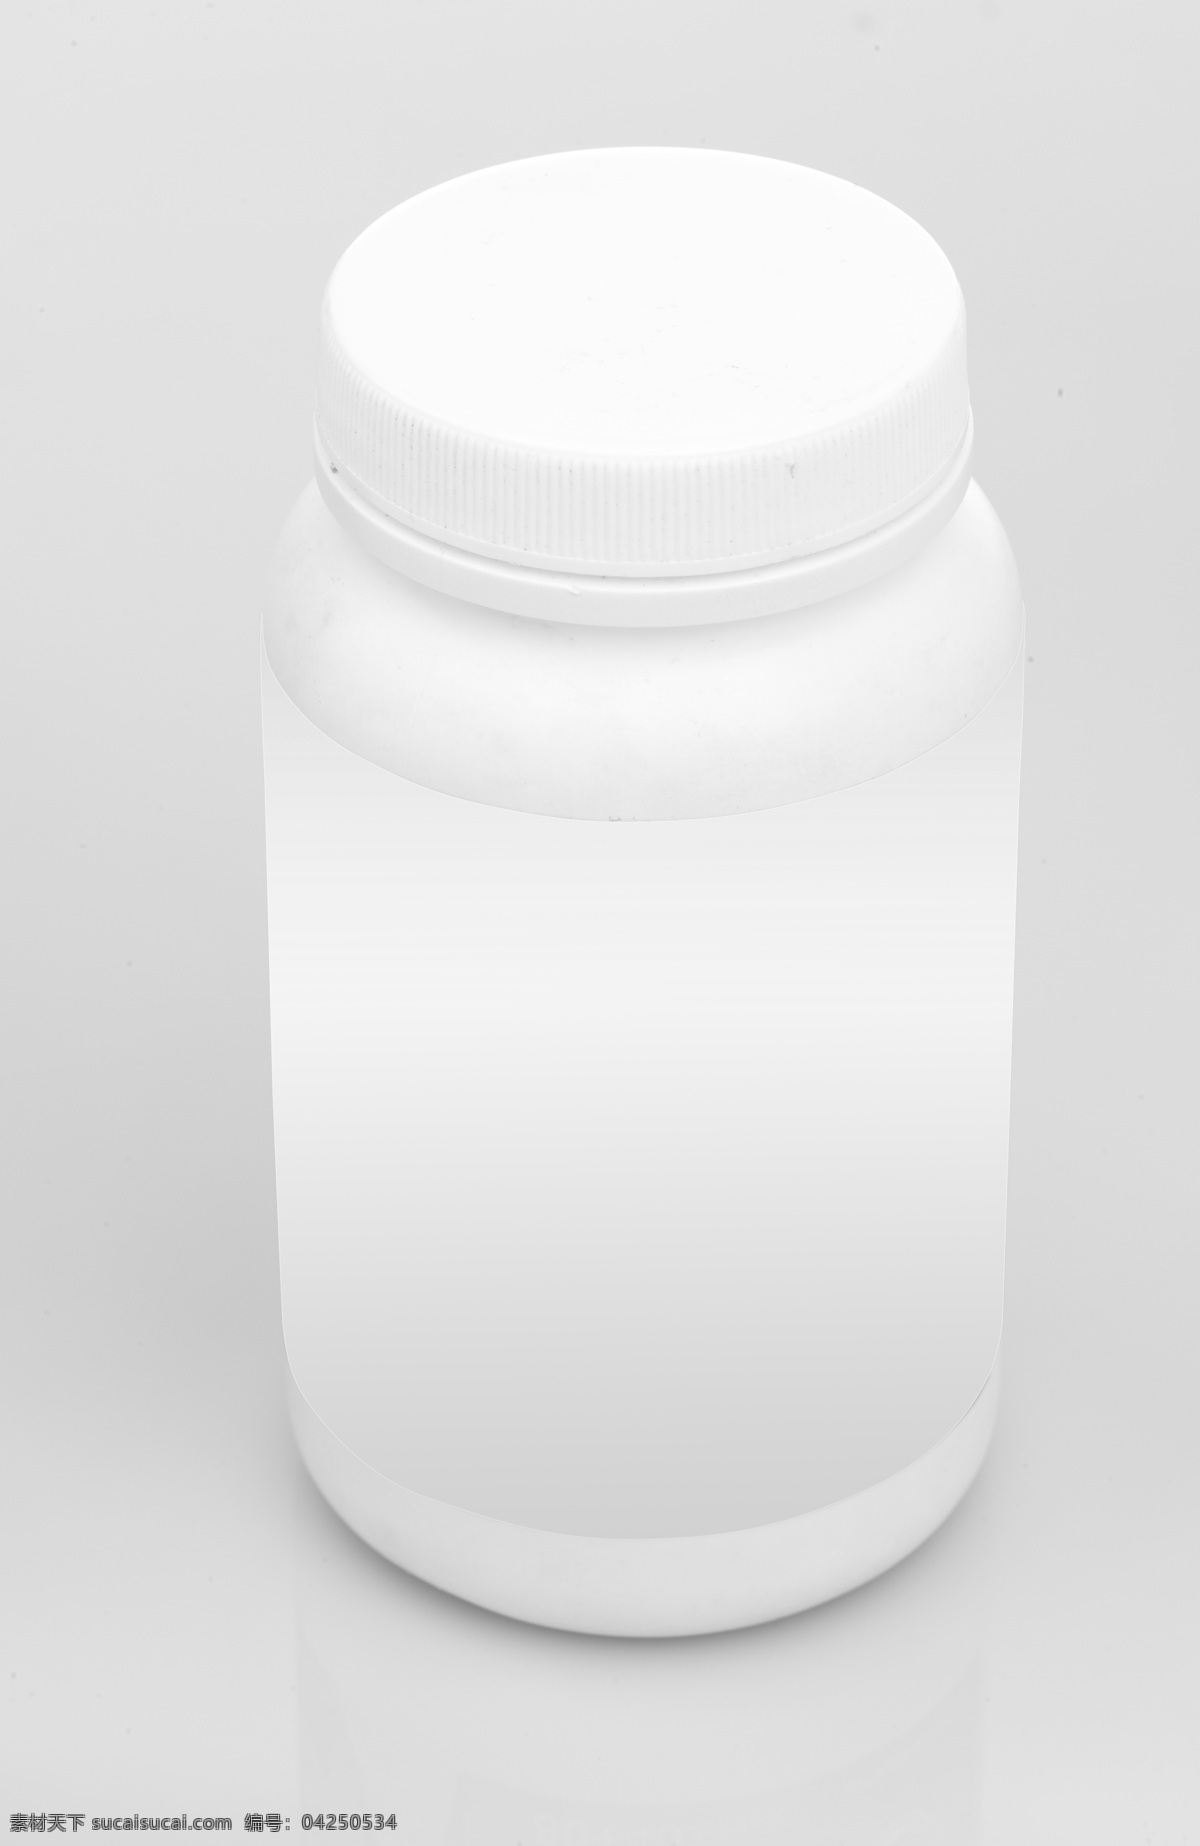 白色 药瓶 包装设计 药品 药品包装 医药包装 白色药瓶 psd源文件